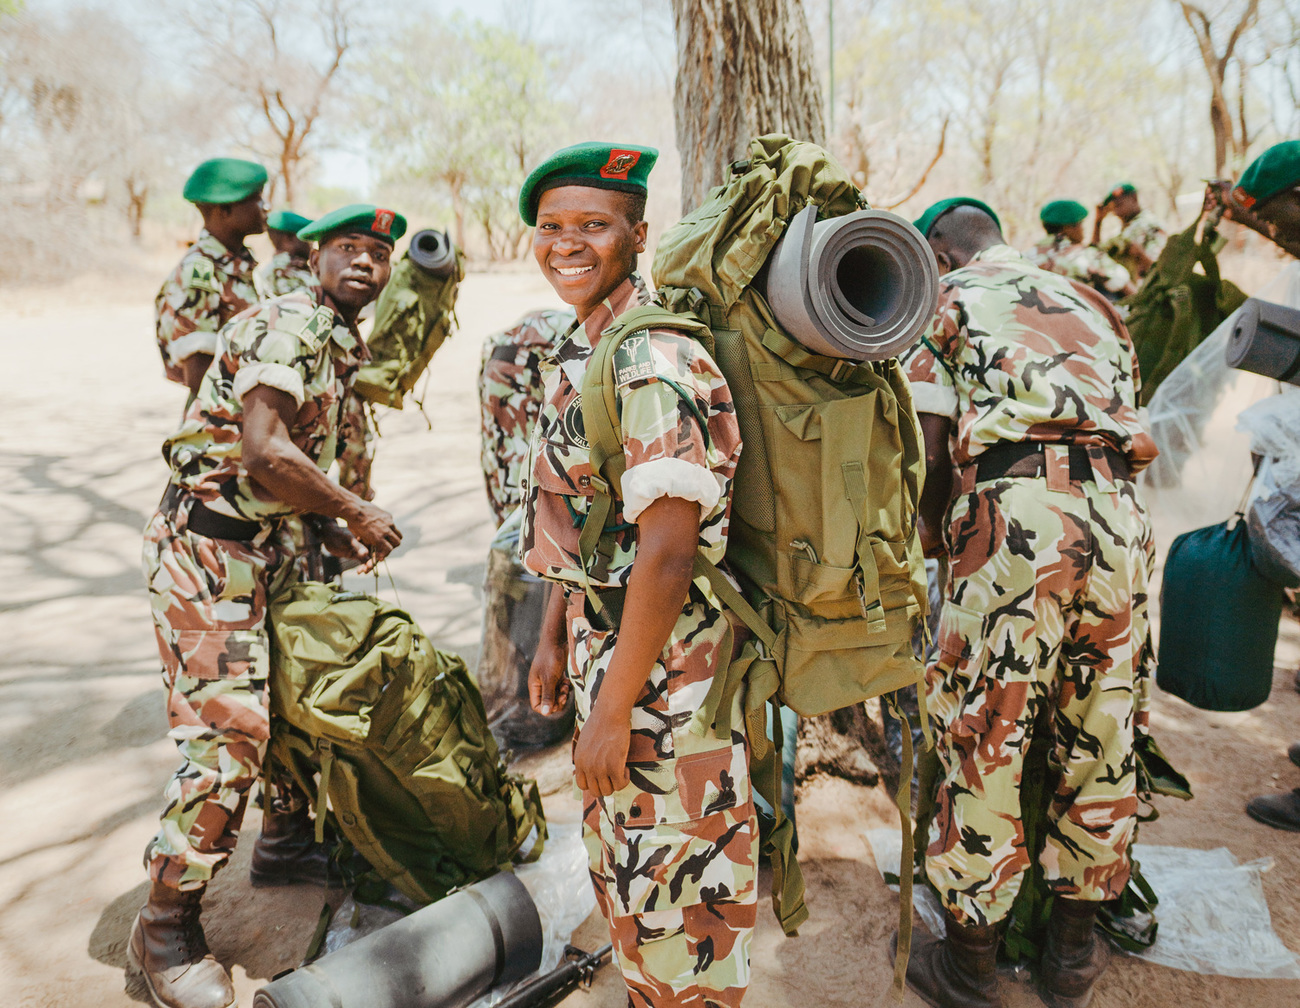 Rangers maken zich klaar voor een patrouille in Kasungu National Park in Malawi.